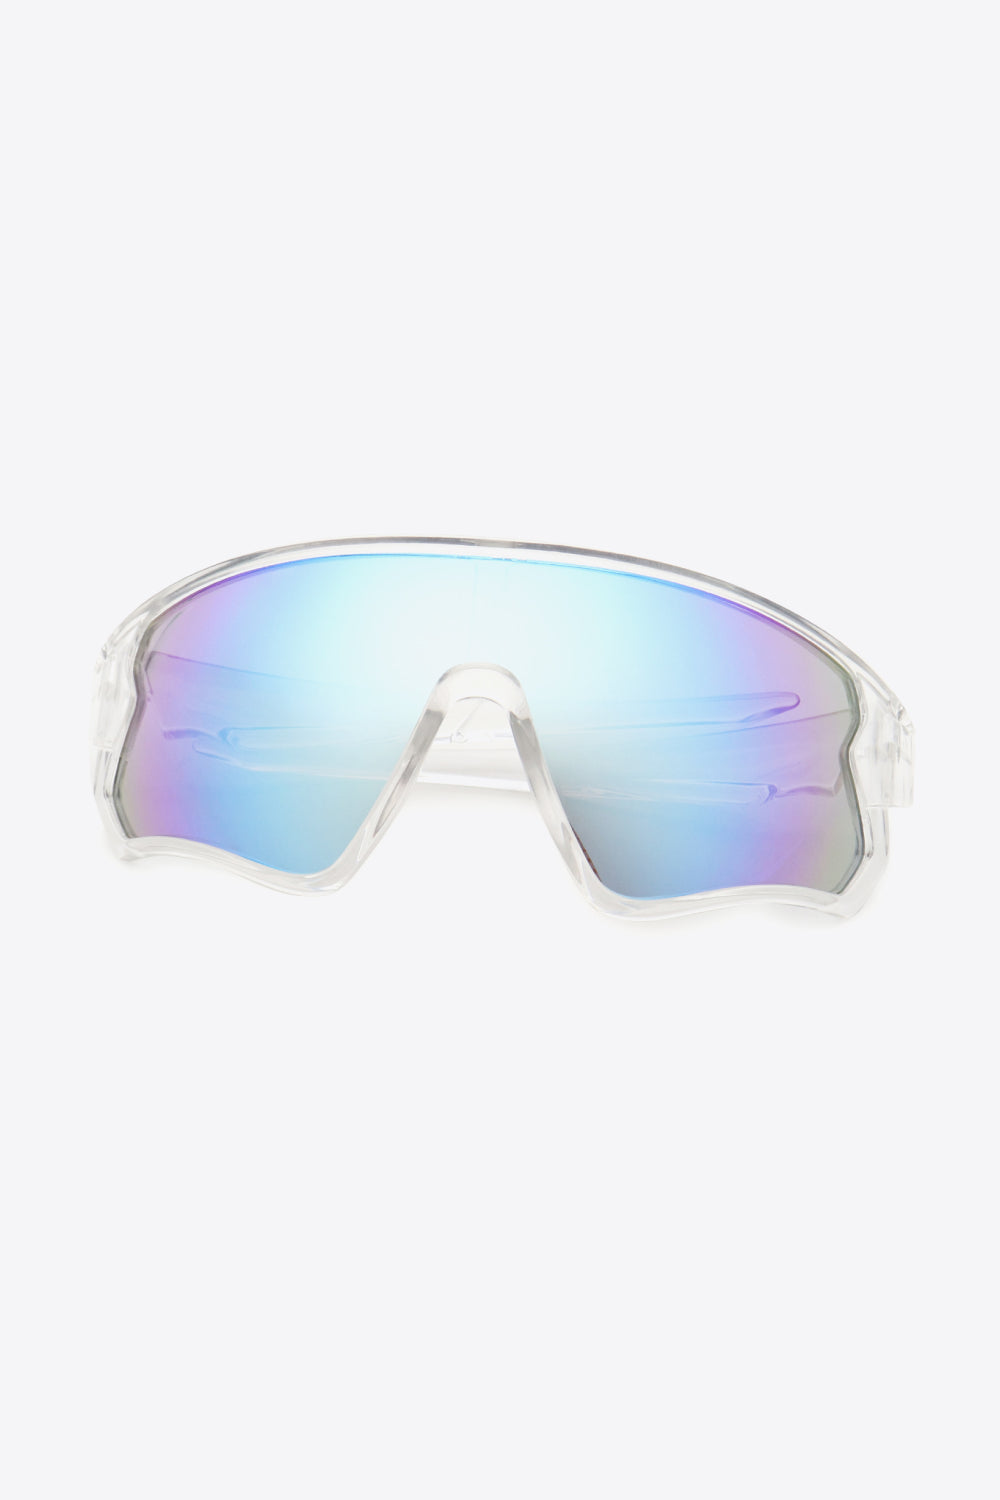 Polycarbonate Shield Sunglasses - AllIn Computer